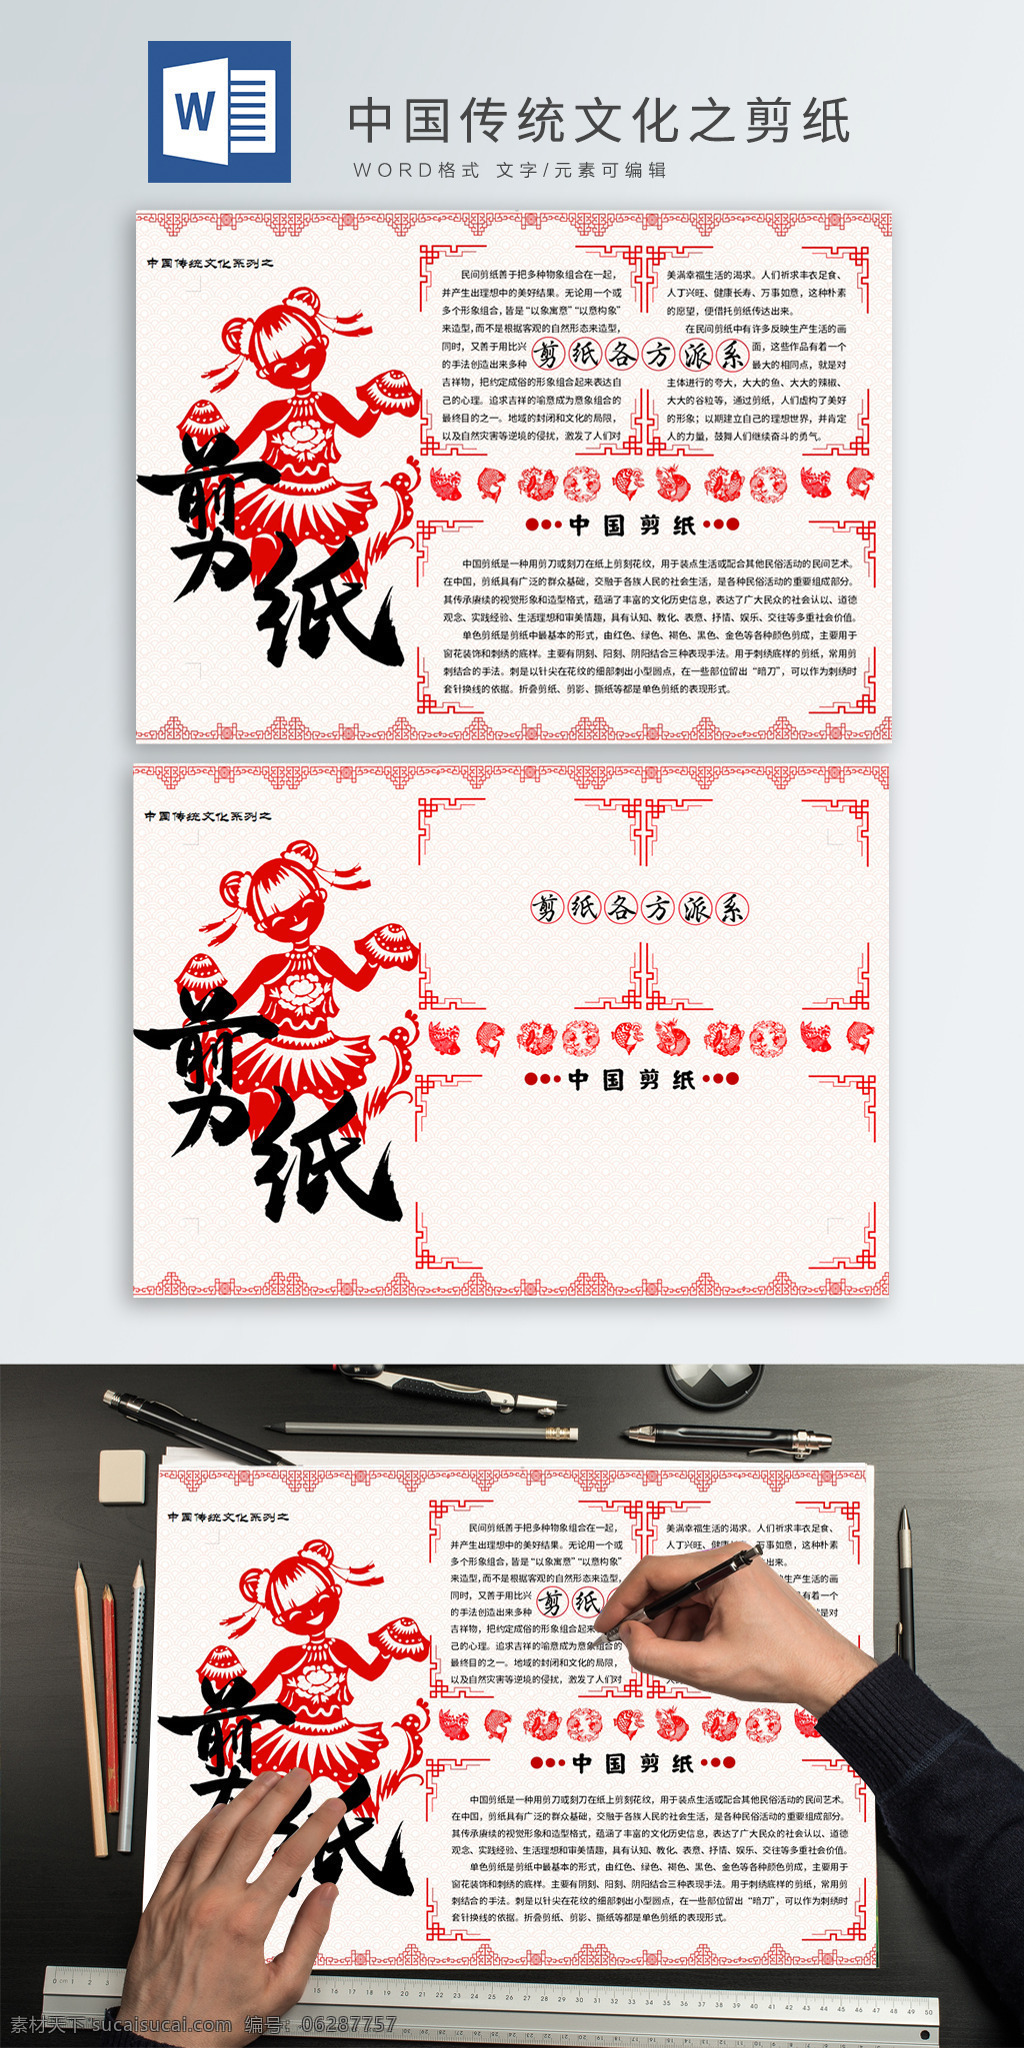 中国 传统文化 剪纸 中国传统文化 剪纸人物 剪纸边框 剪纸鱼